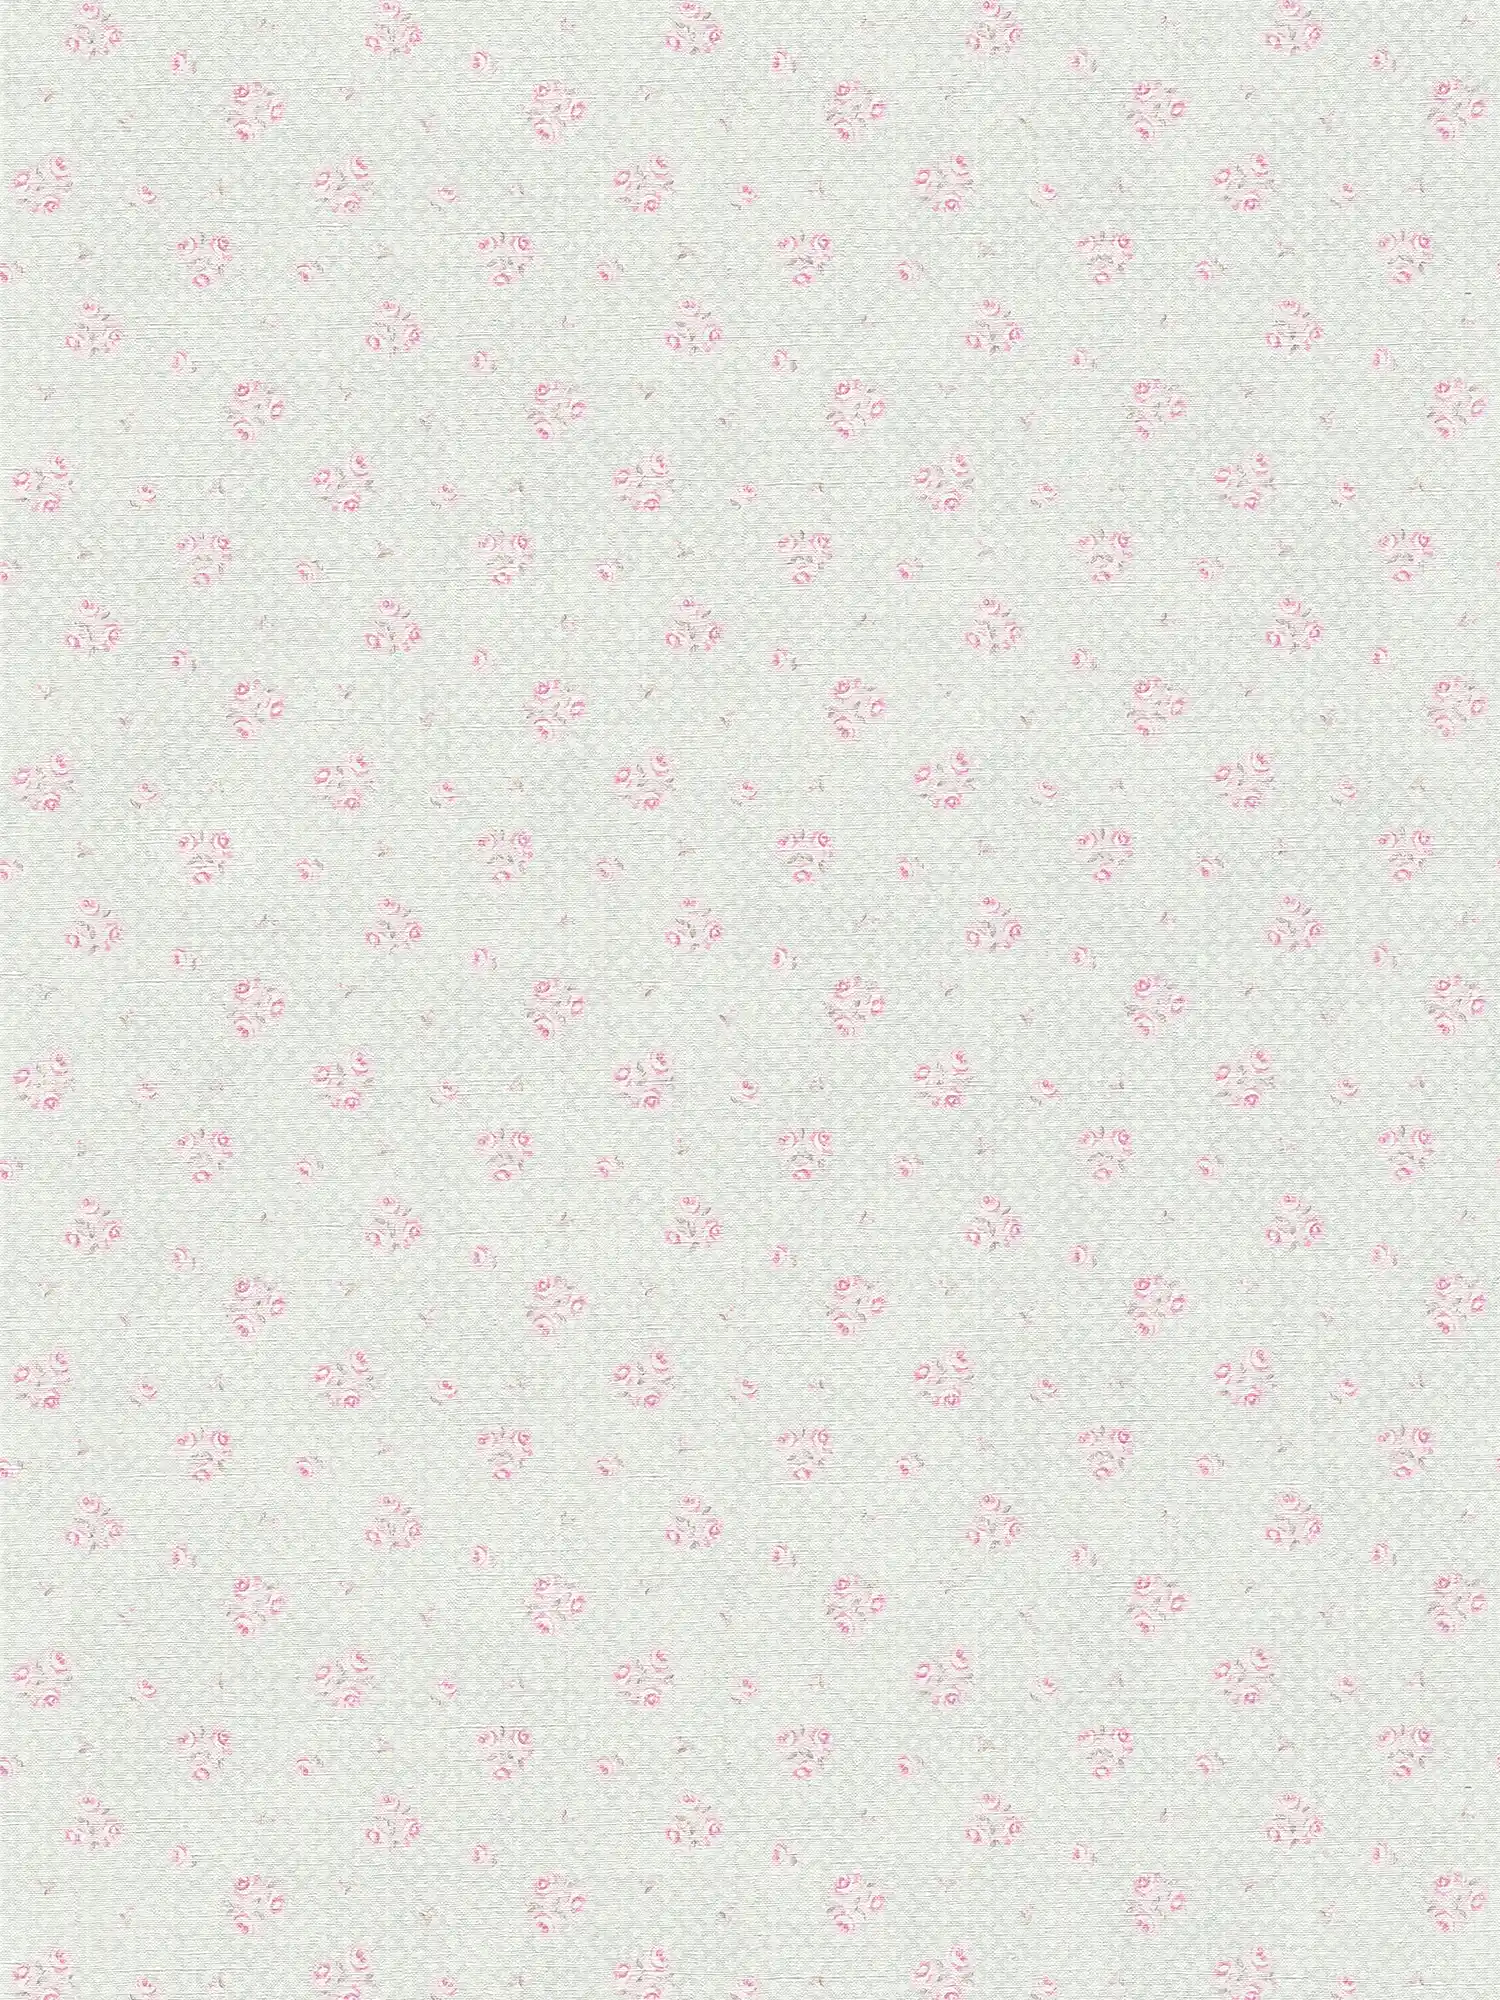 Vliesbehang met bloemenmotief in Shabby Chic stijl - grijs, roze, wit
